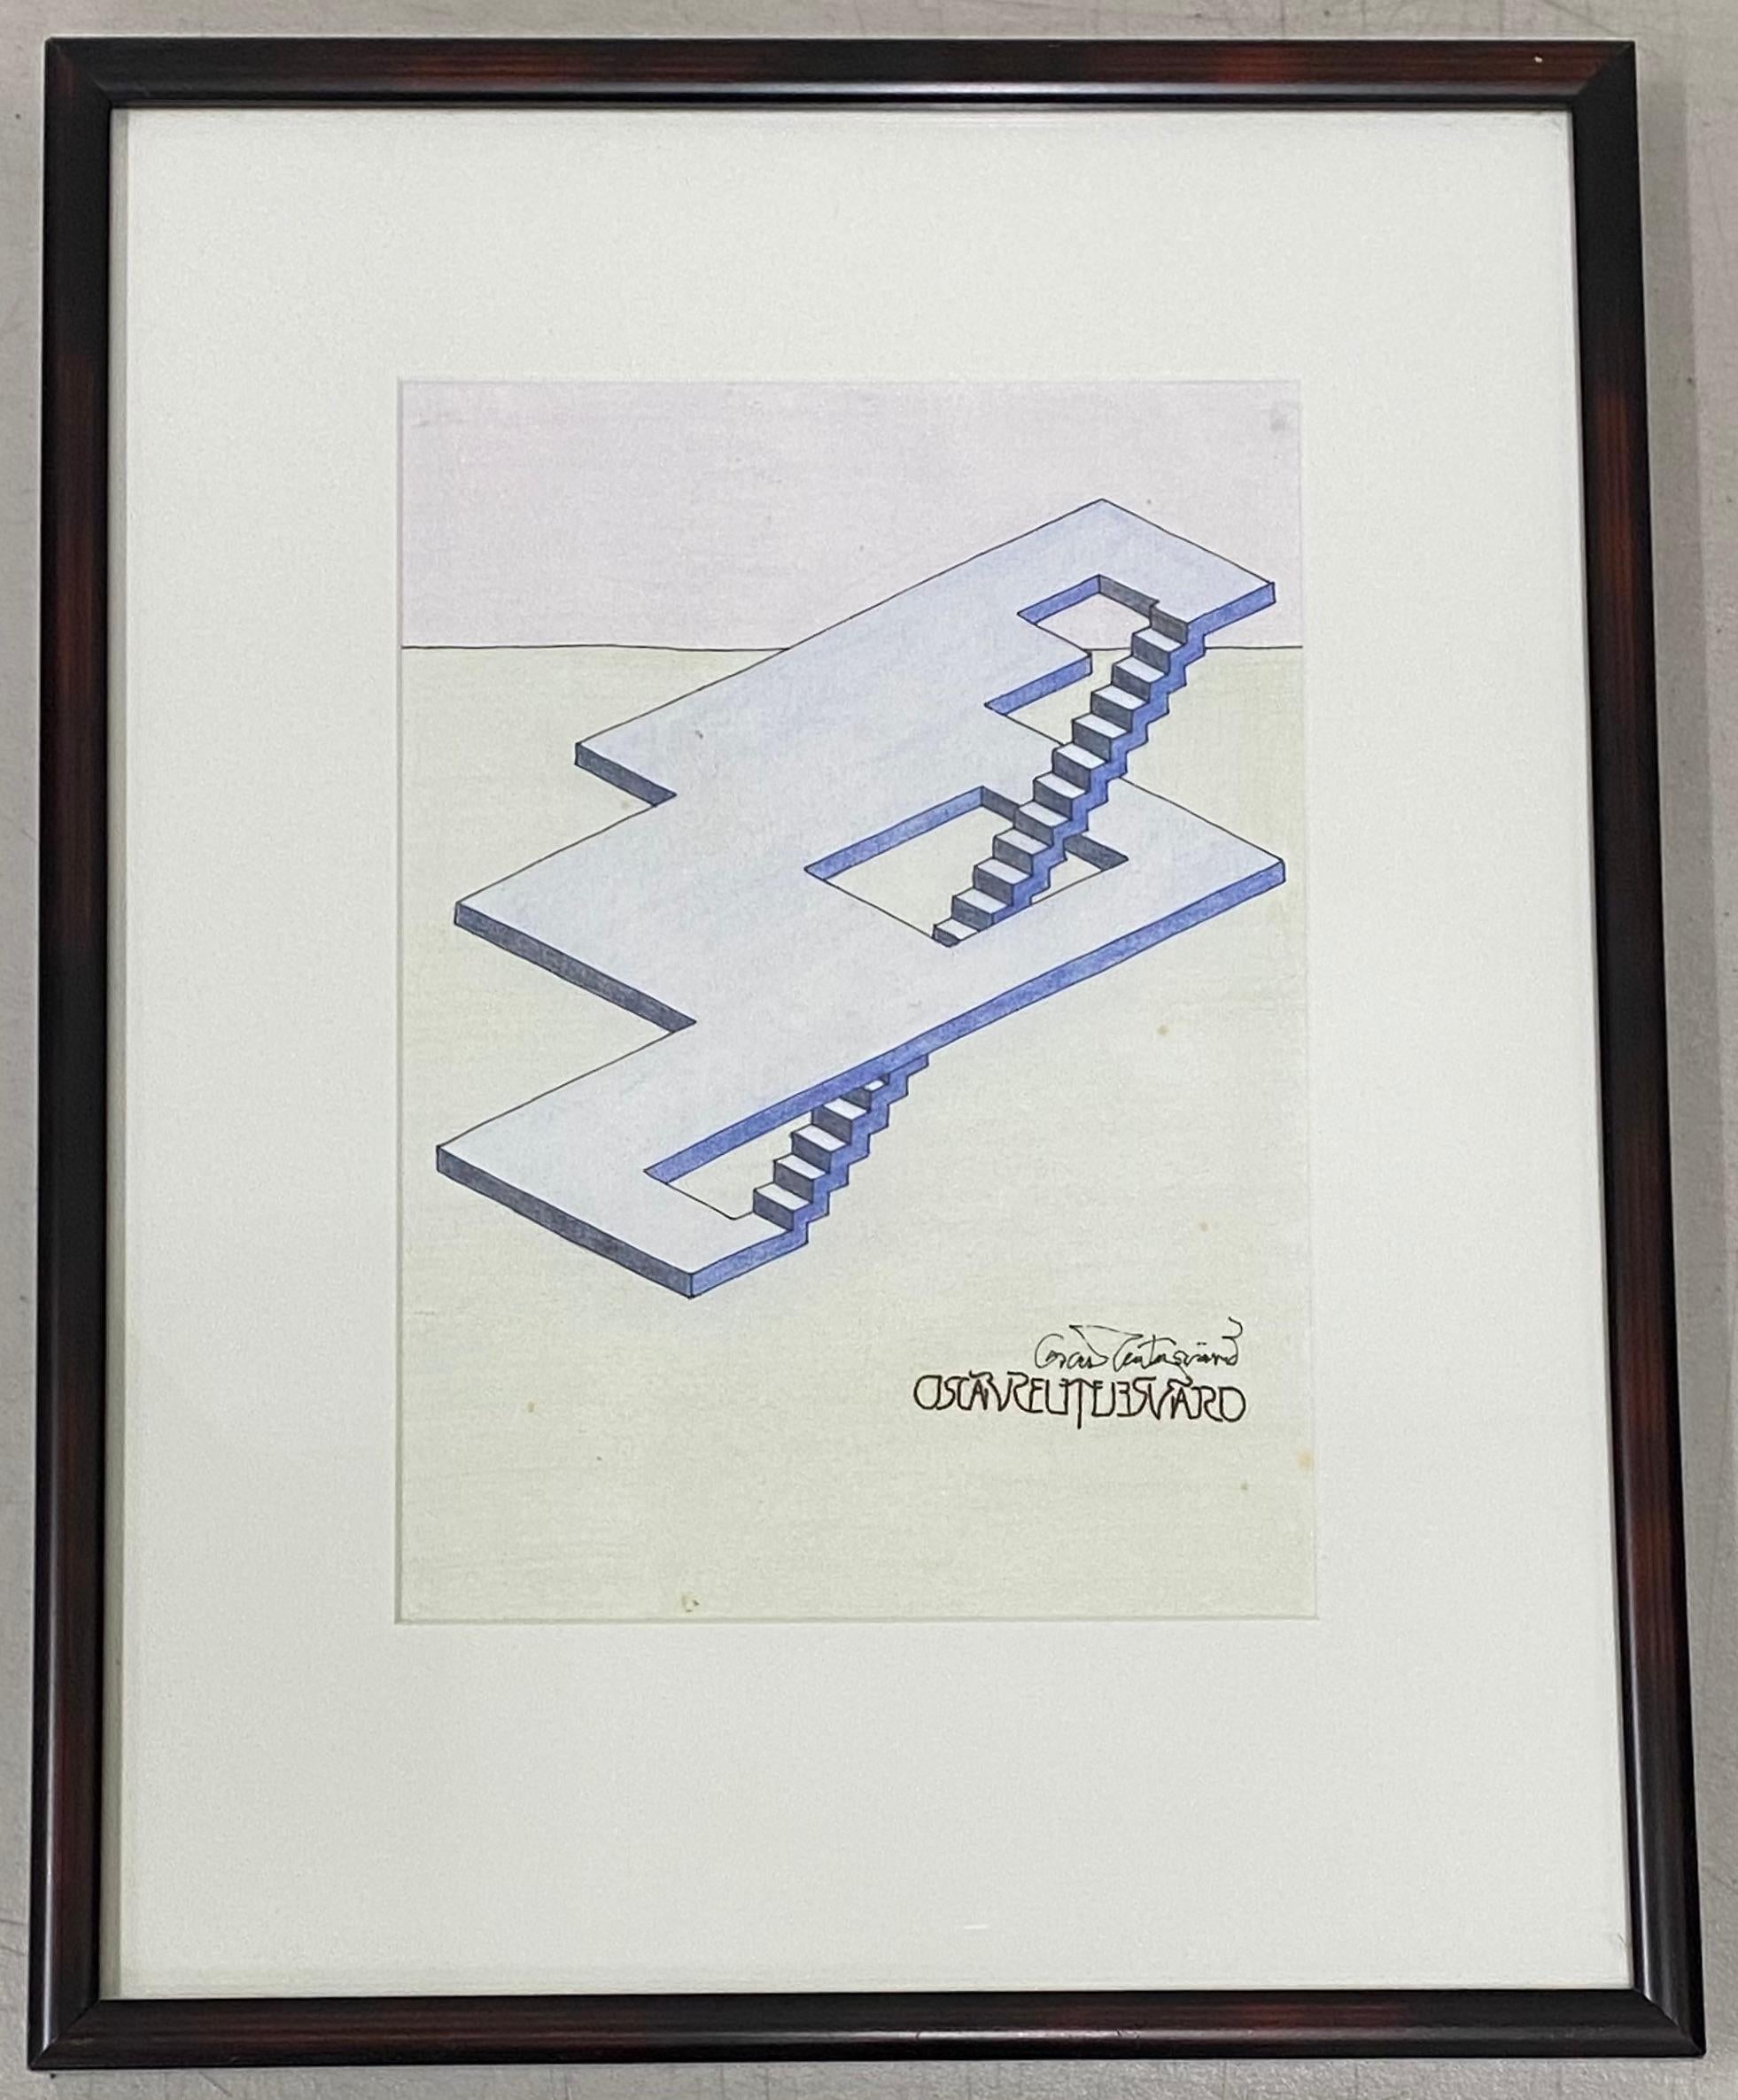 Oscar Reutersvard Dessin original Op Art à la plume, à l'encre et à l'aquarelle C.C. 1990

Dimensions 8" de large x 11" de haut

Logé dans un cadre simple - Dimensions 15" de large x 19" de haut

Signé en bas à droite

Bon état vintage 

Oscar